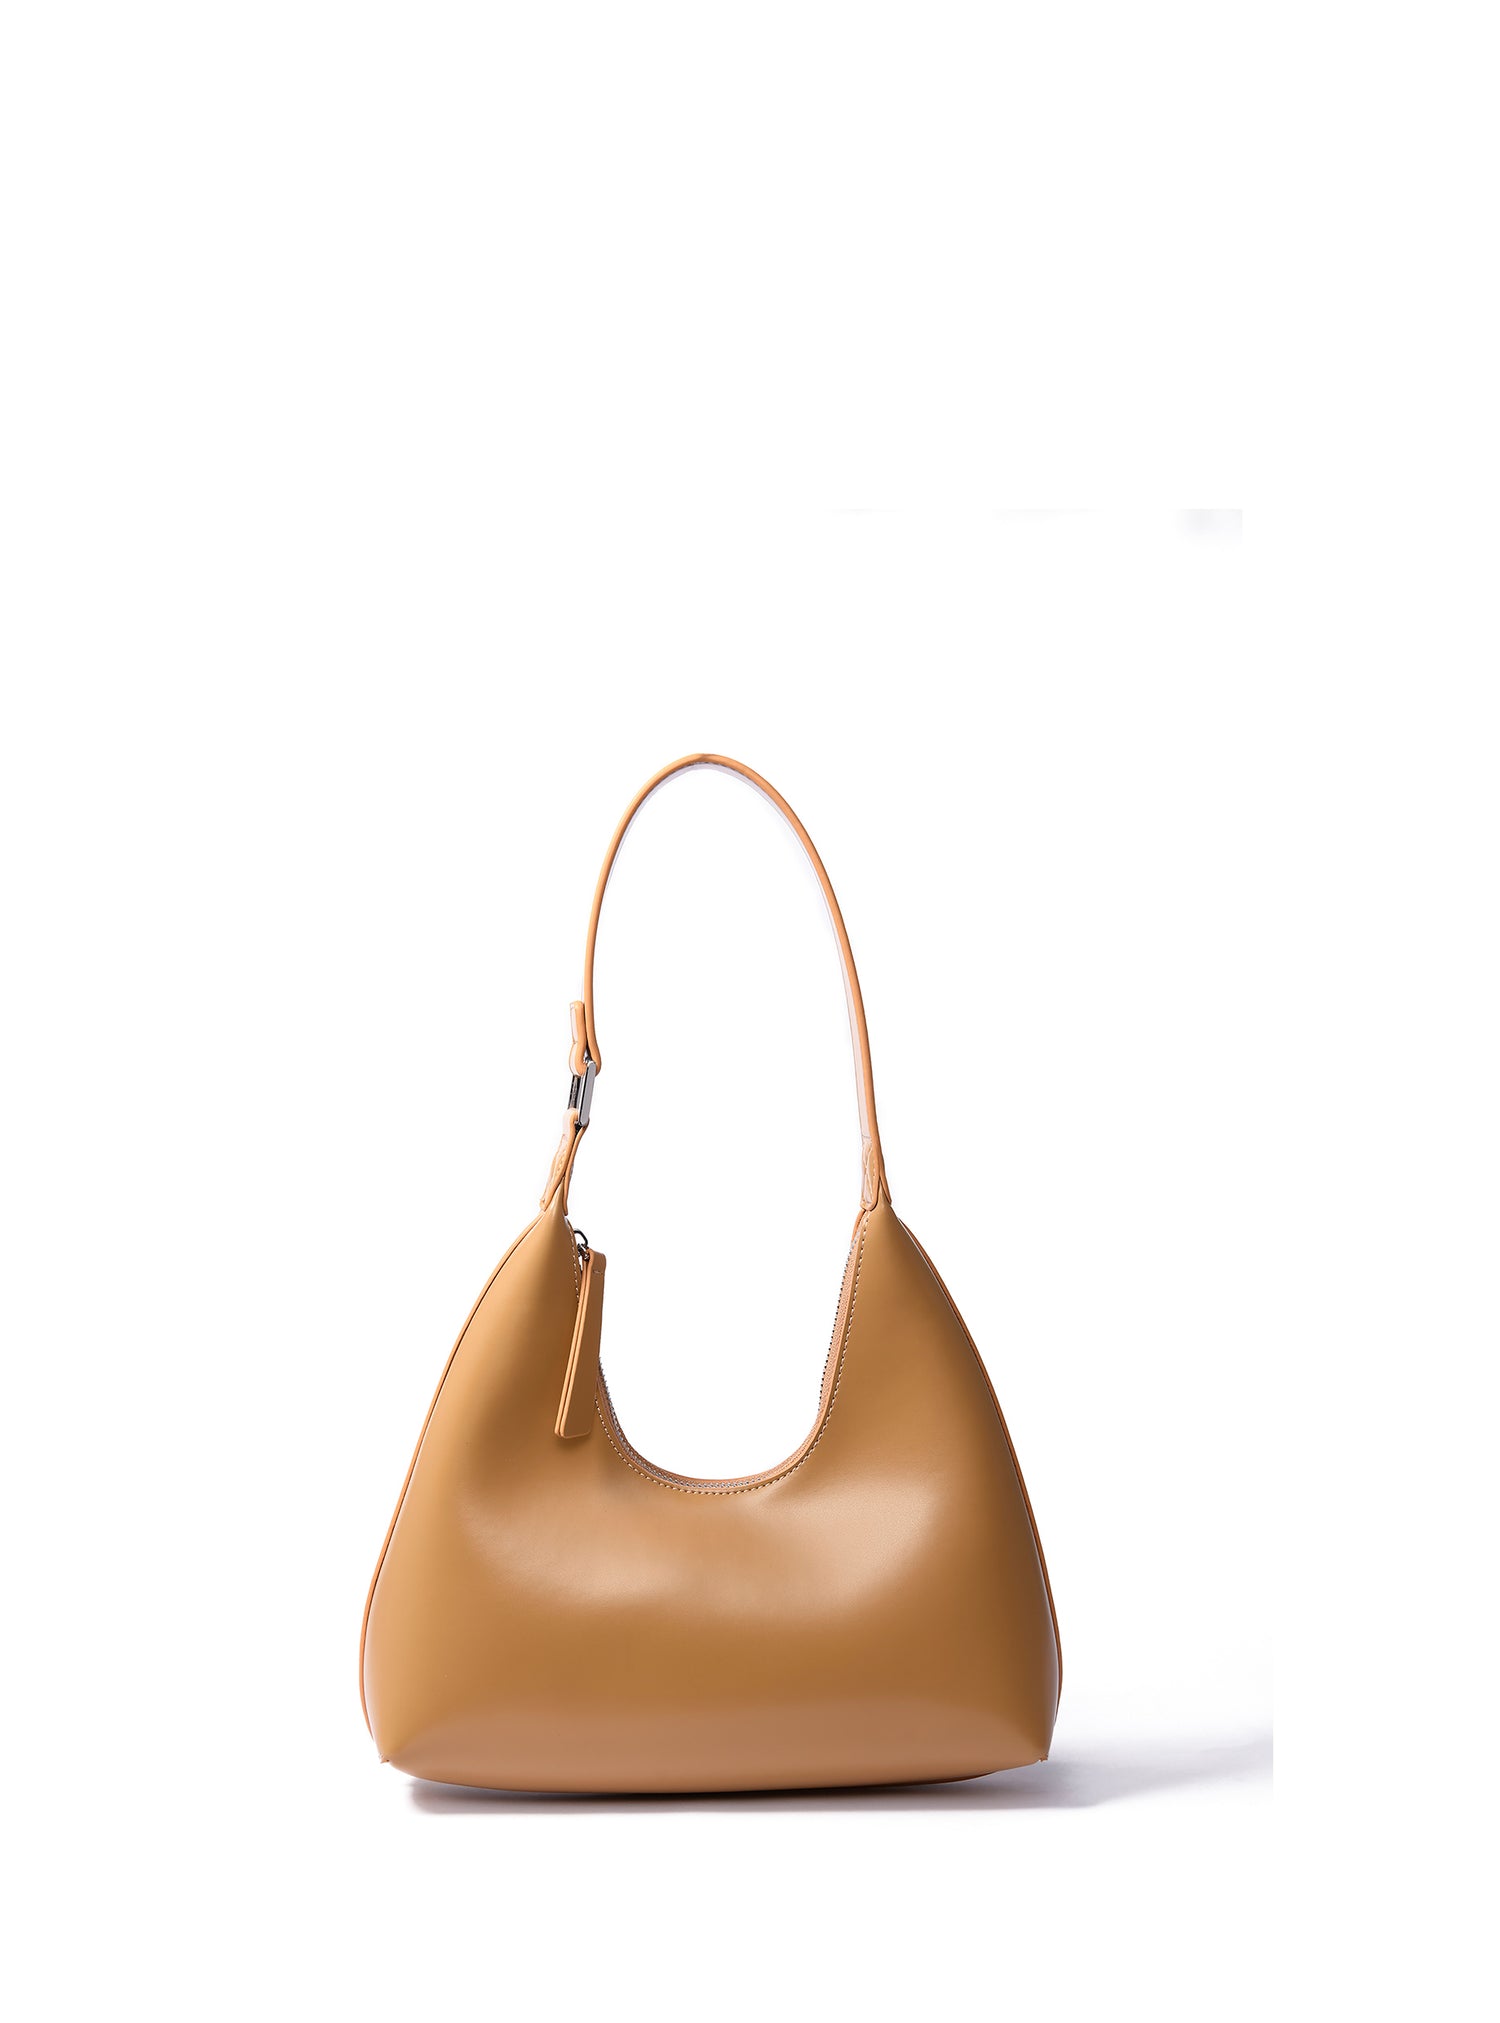 alexia bag, alexia handbag